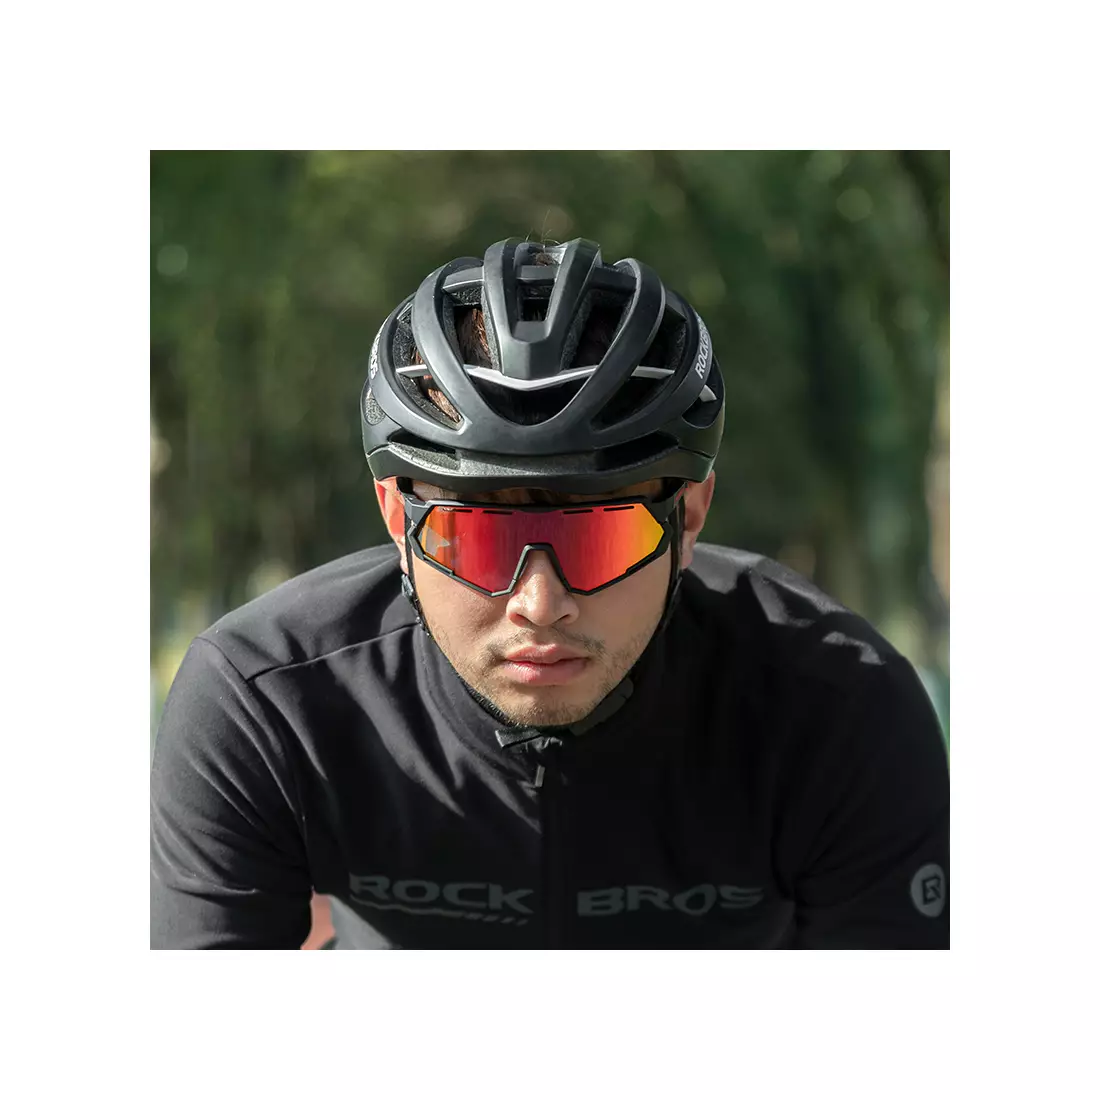 Rockbros 14210004001 Kerékpáros / sport szemüveg, polarizált, fotokróm 2 cserélhető lencse, fekete és piros